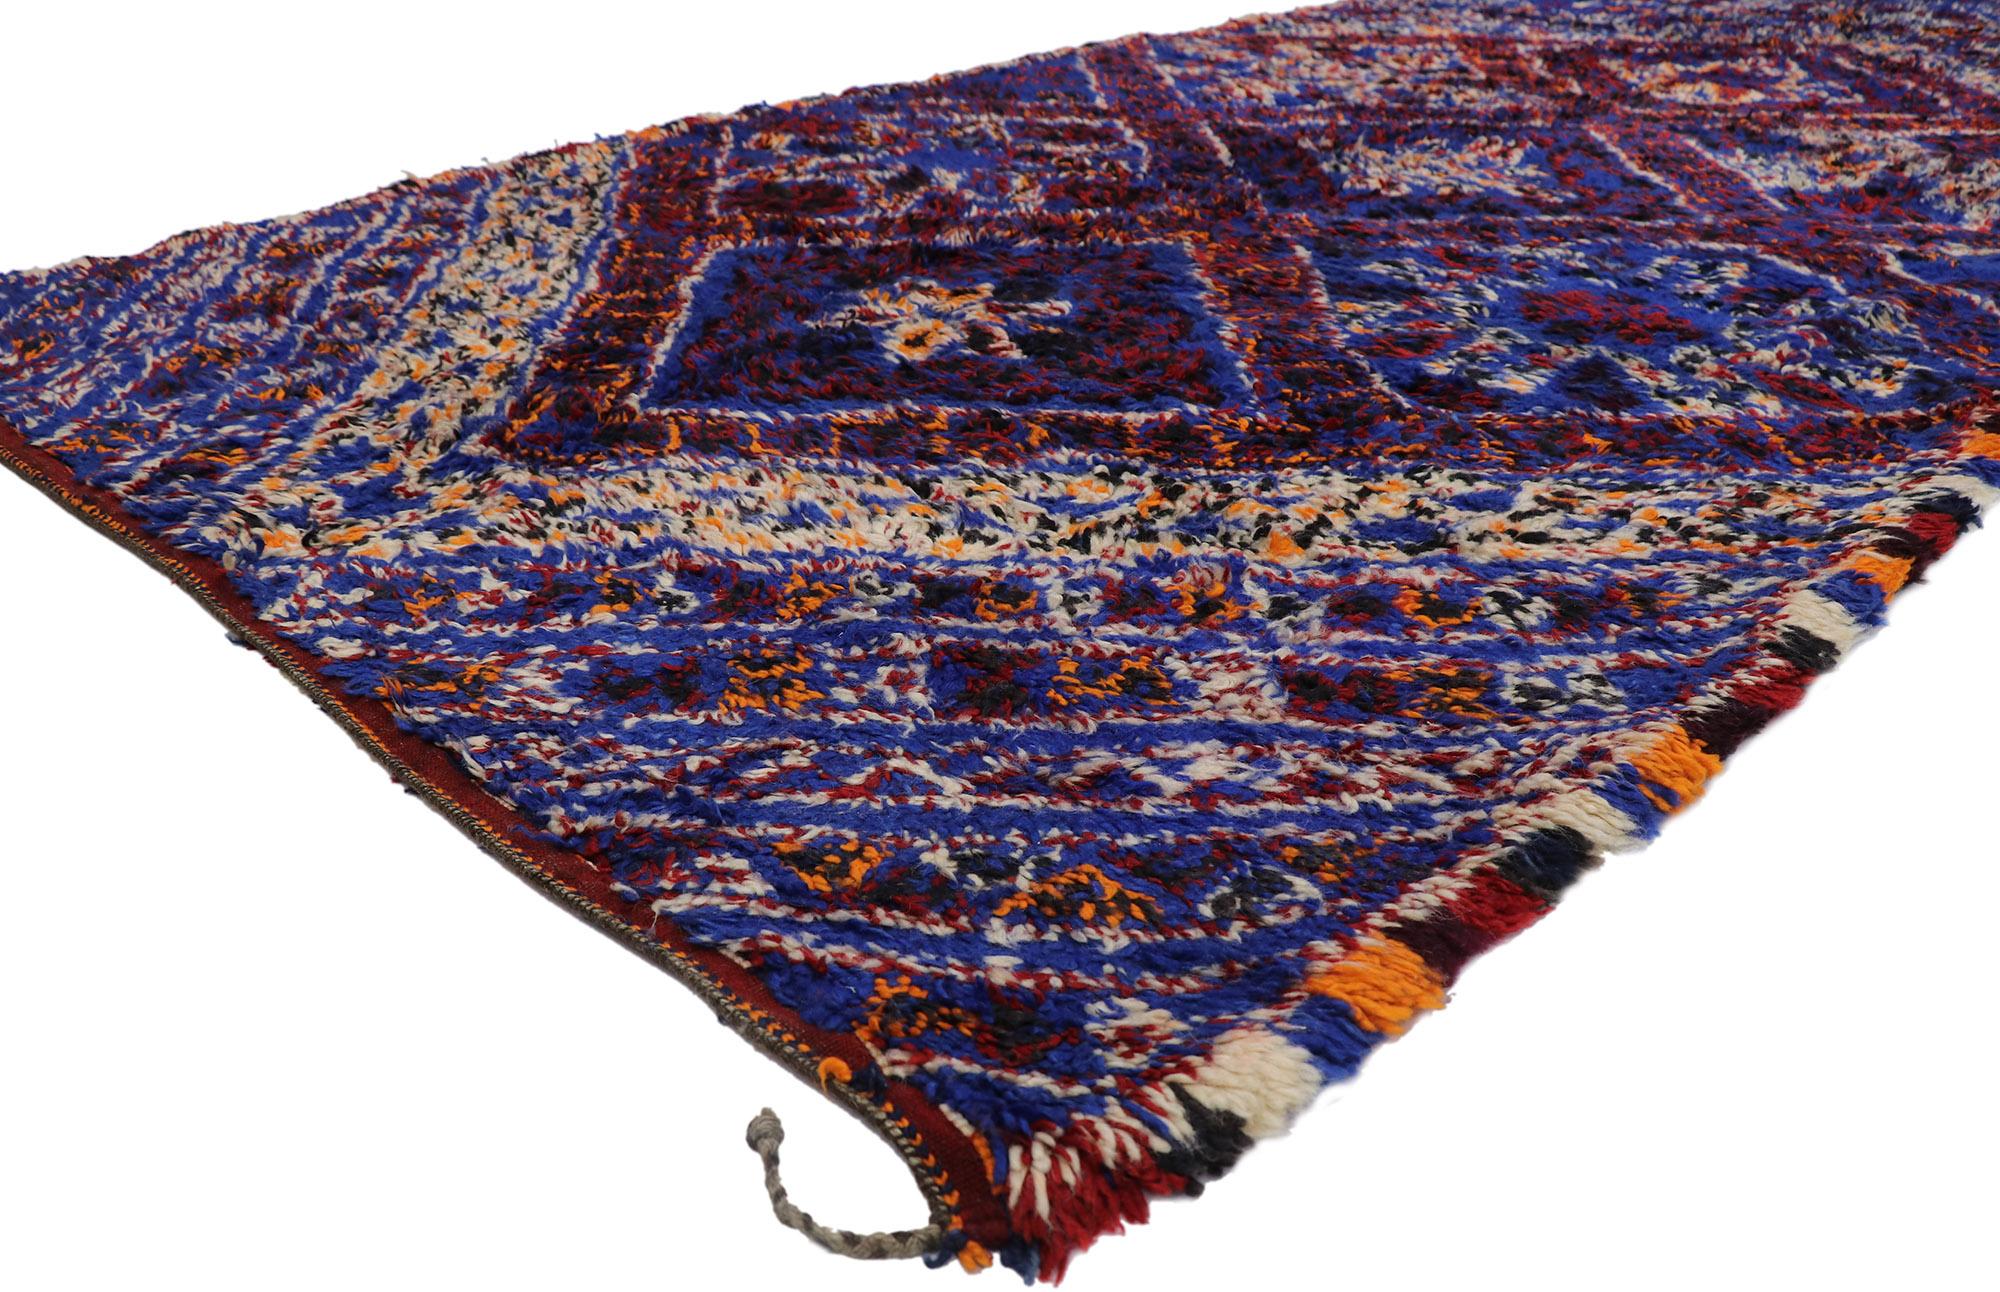 21215 Vieux tapis marocain berbère Beni M'Guild avec style tribal 06'03 x 12'10. Avec son design expressif et audacieux, ses détails et sa texture incroyables, ce tapis berbère vintage Beni M'Guild en laine nouée à la main est une vision captivante